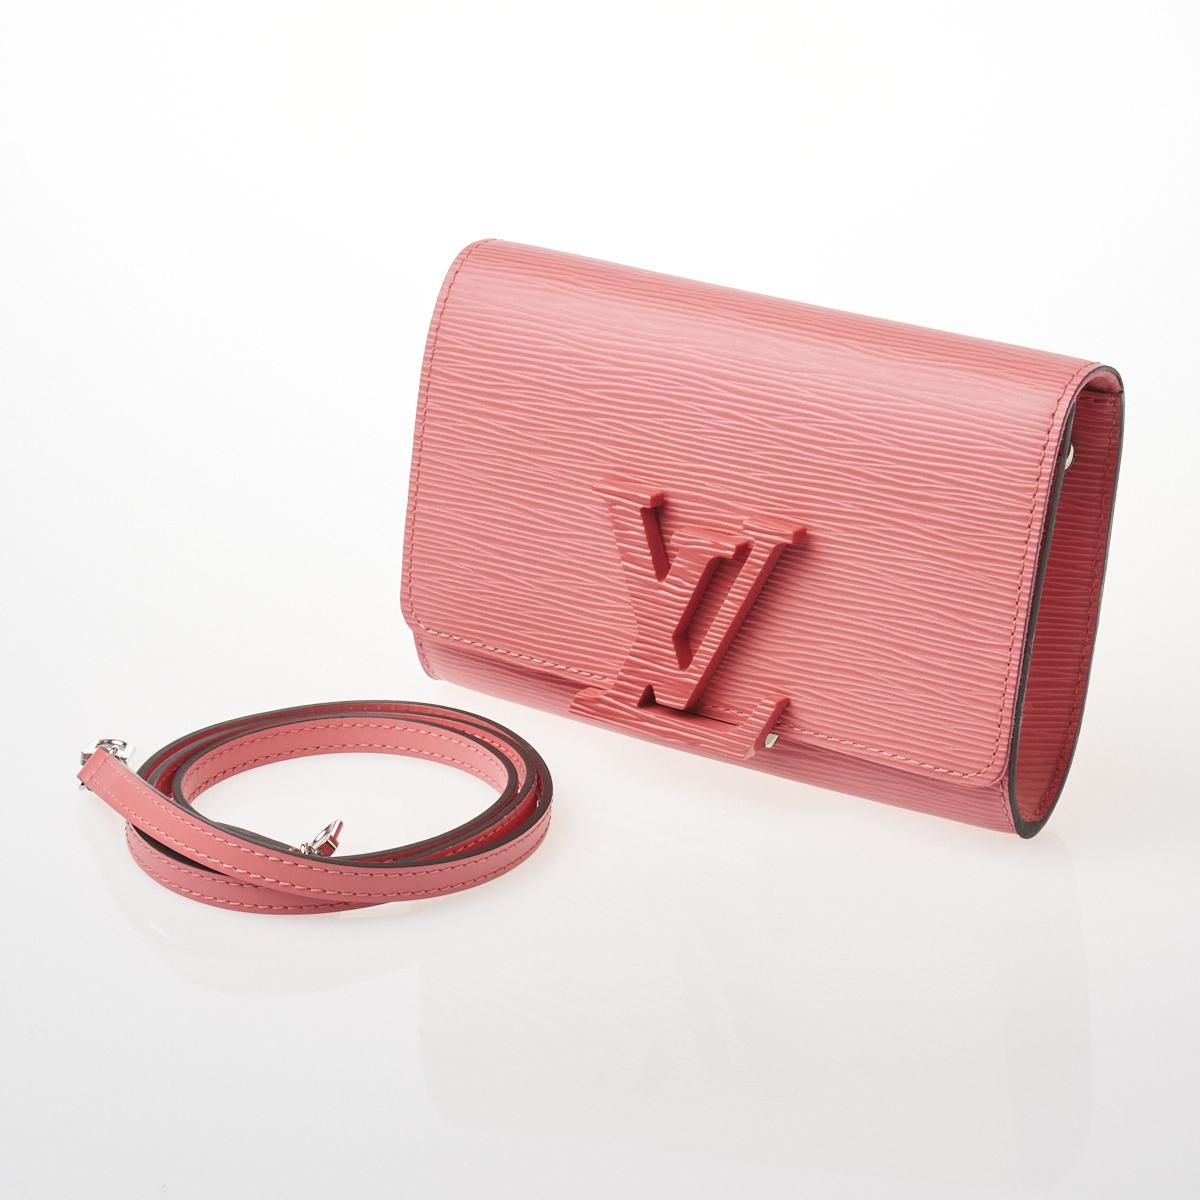 Sold at Auction: Louis Vuitton, Louis Vuitton Epi Shoulder Bag